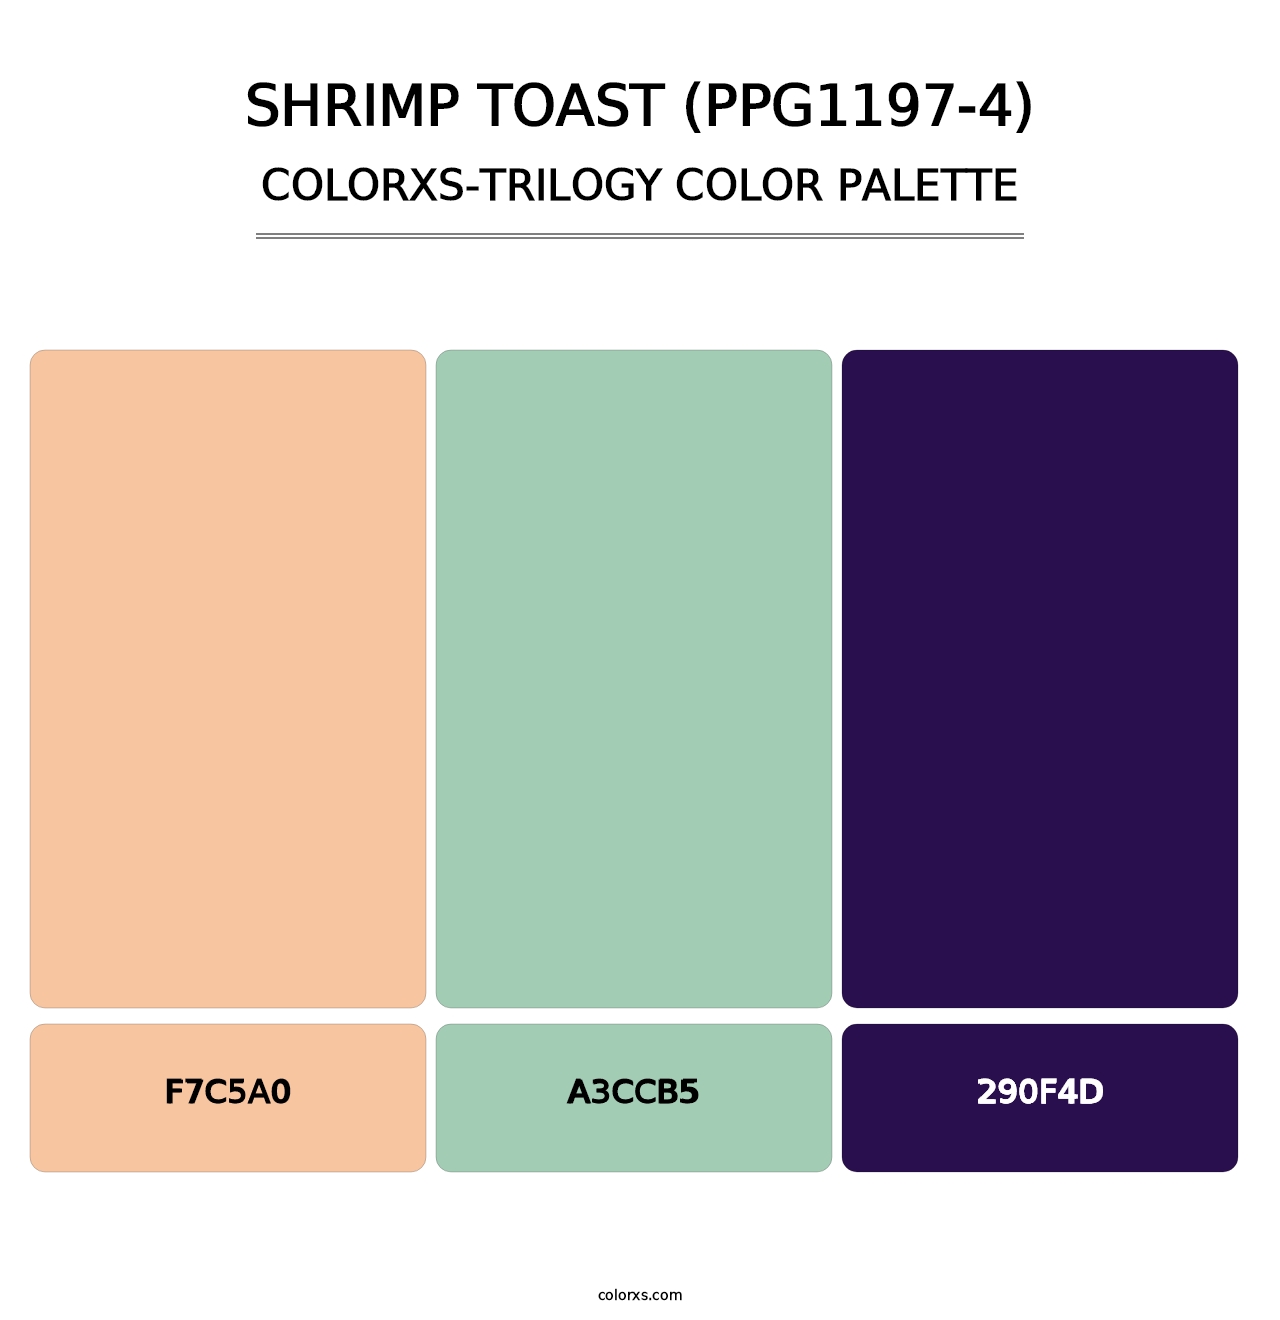 Shrimp Toast (PPG1197-4) - Colorxs Trilogy Palette